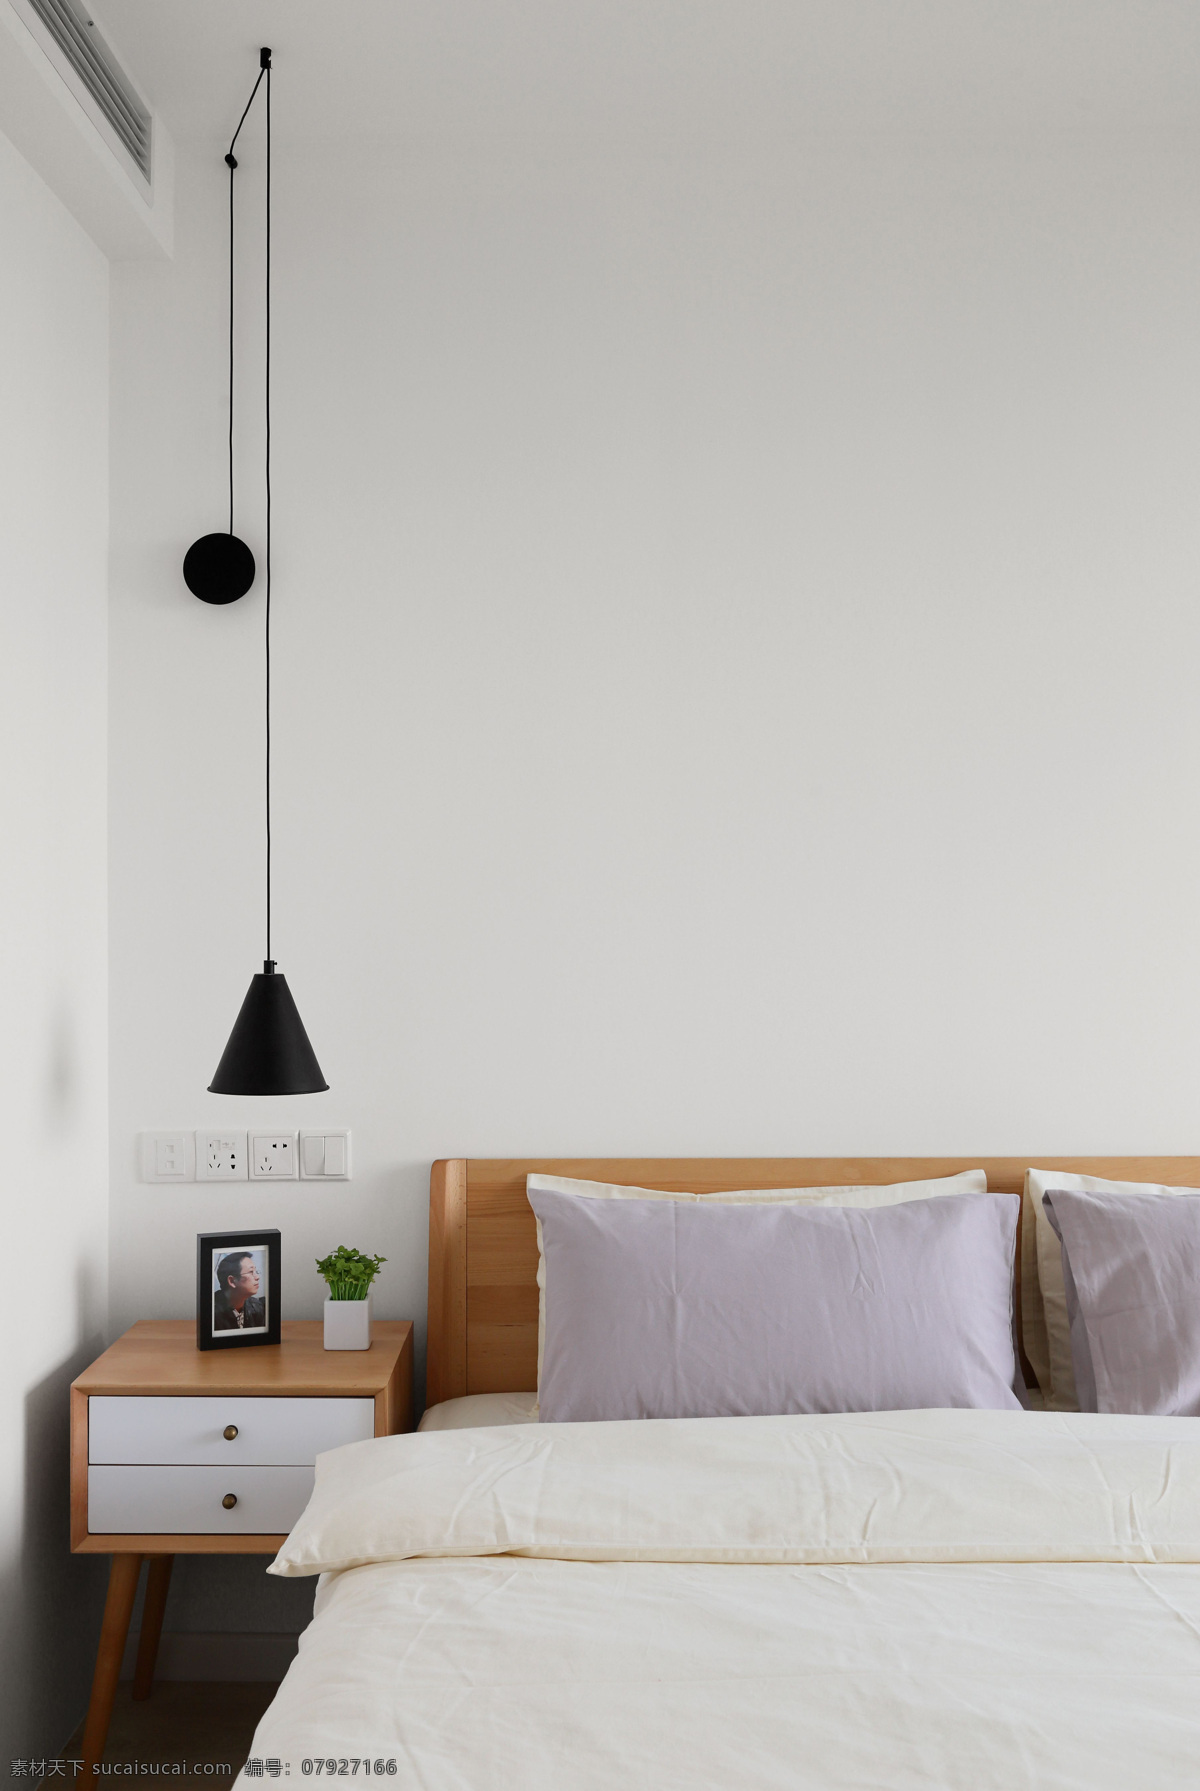 现代 简约 创意 卧室 床头灯 设计图 家居 家居生活 室内设计 装修 室内 家具 装修设计 环境设计